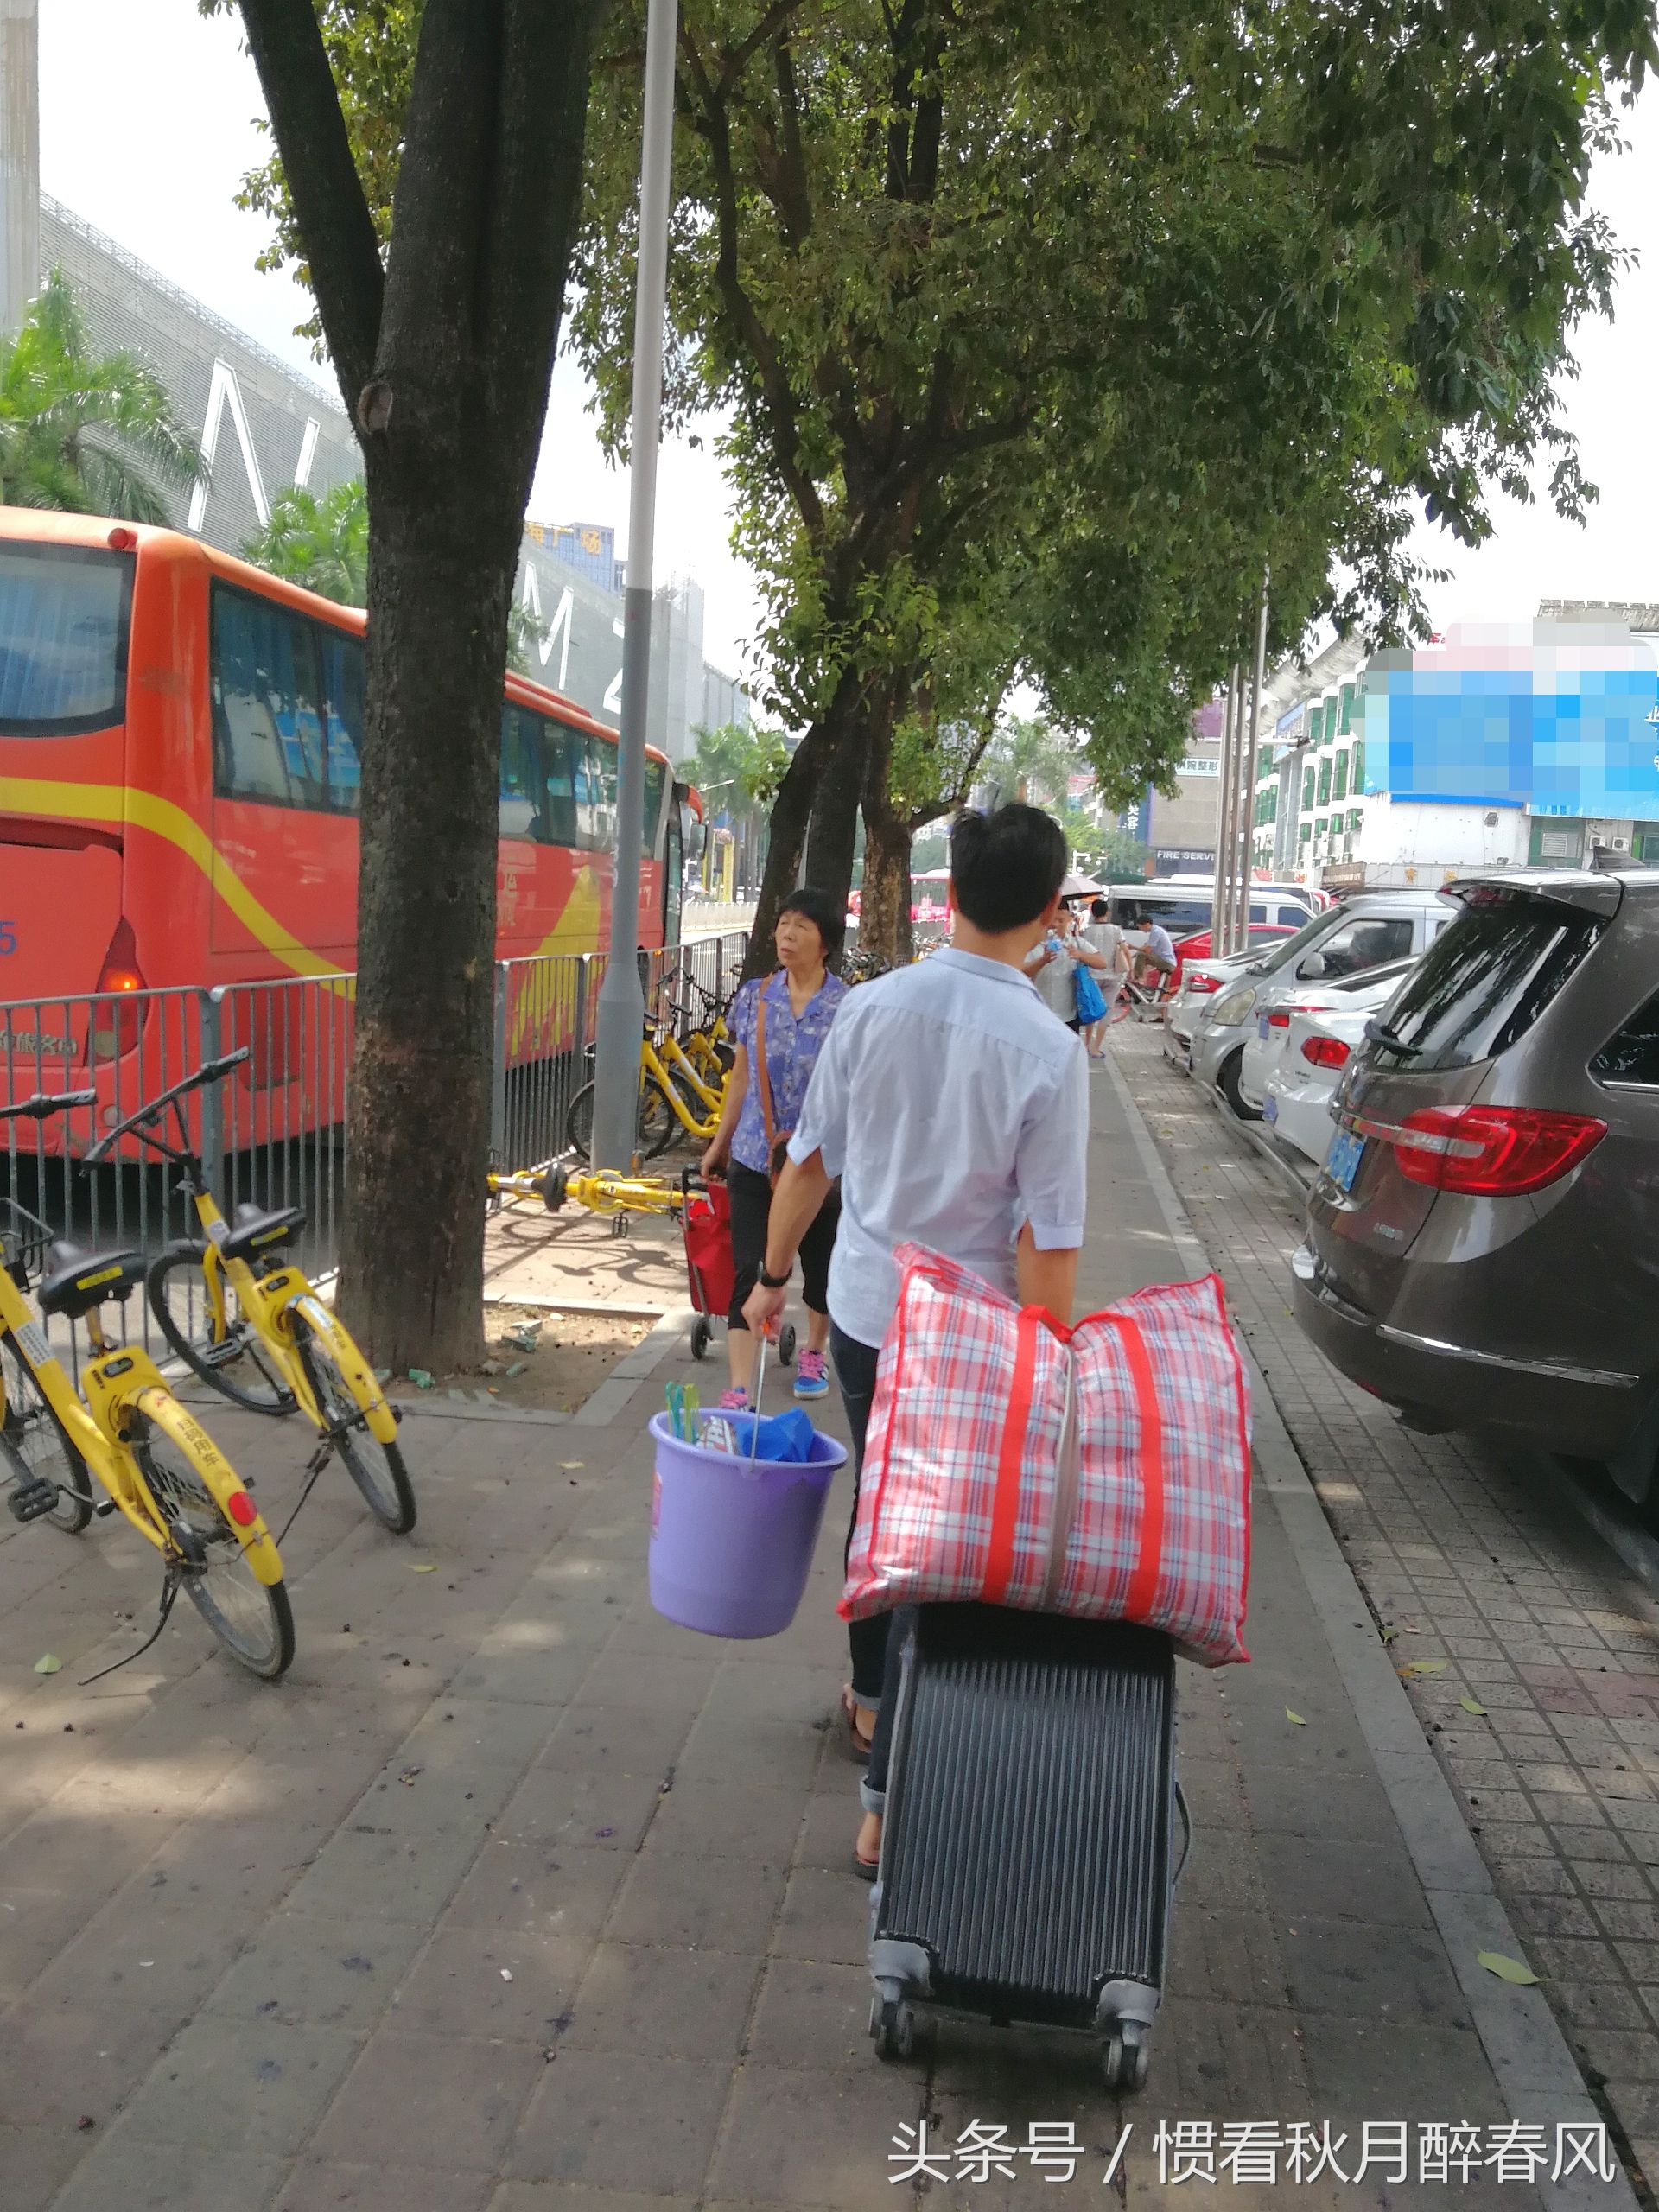 深圳打工仔:提着满满的行李,冒着炎炎的烈日,在大街上